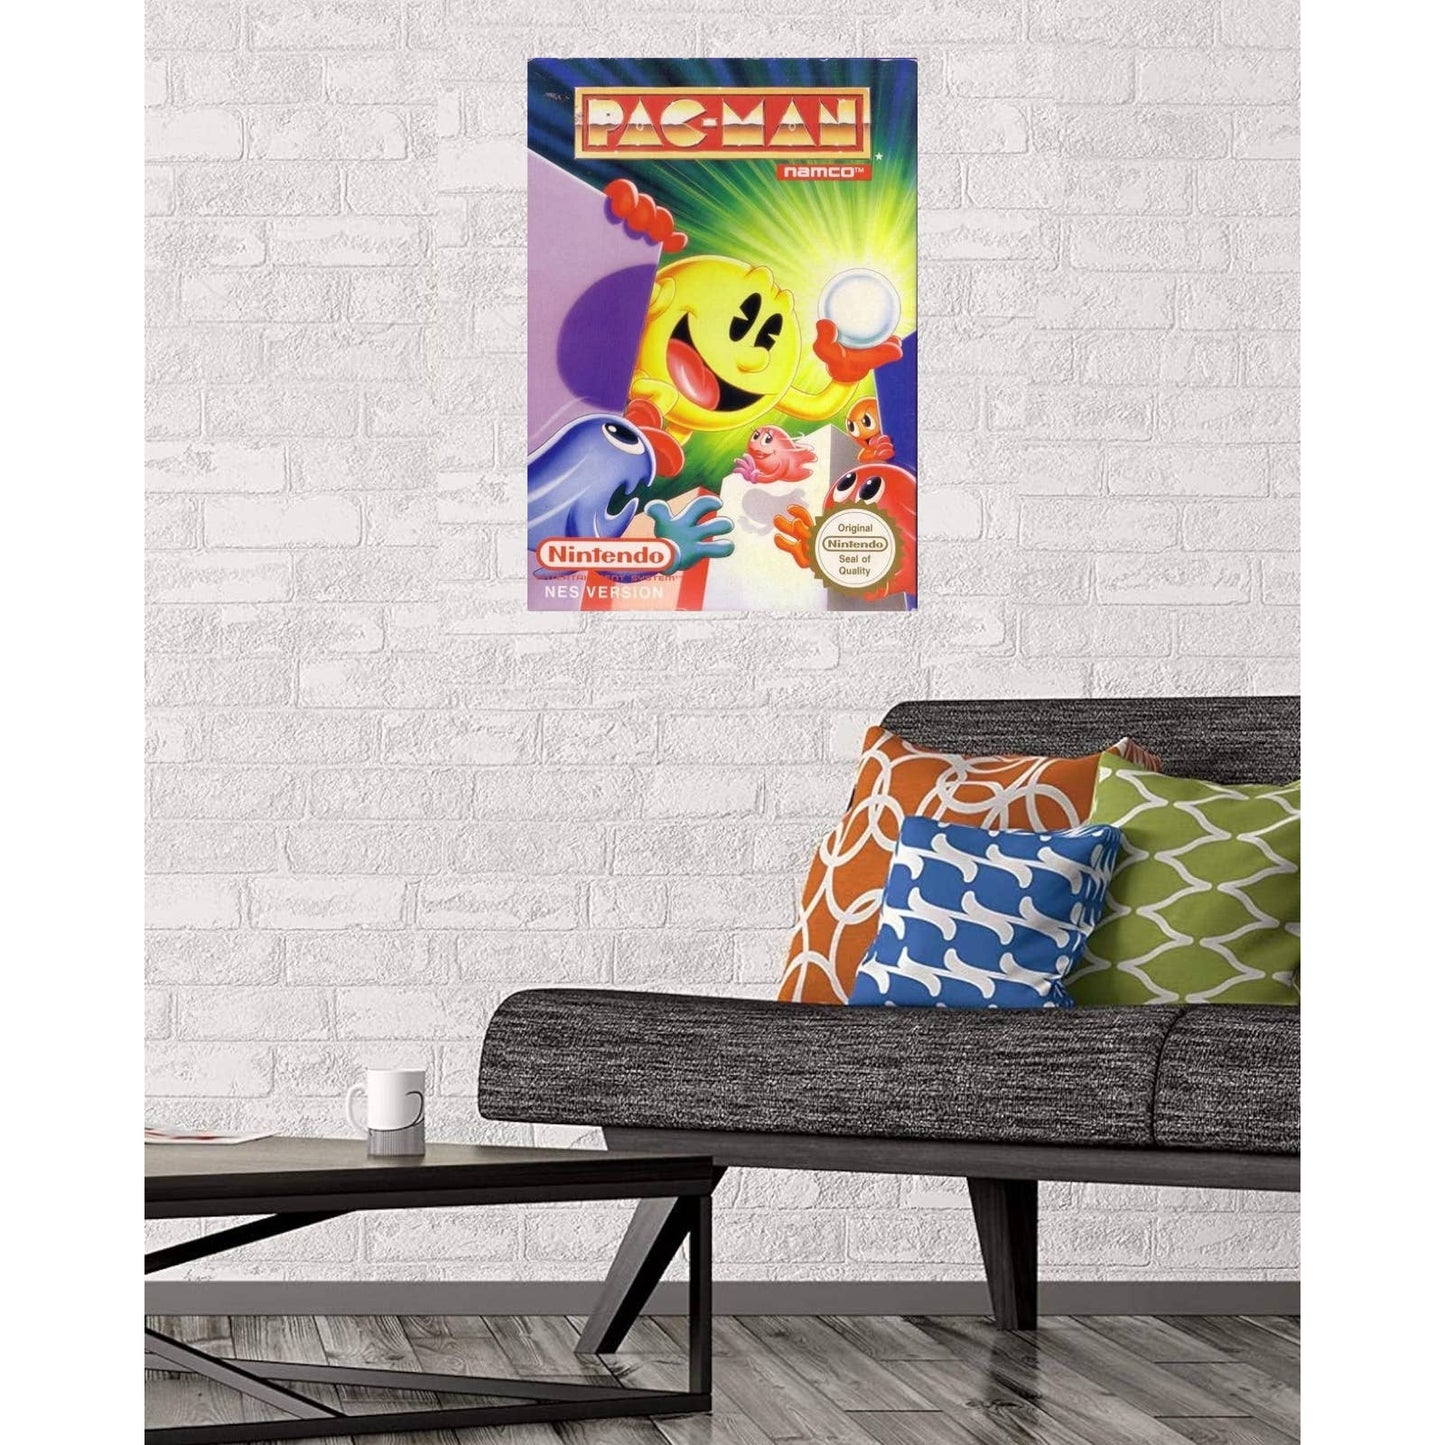 Pac-Man Video Game Poster Print Wall Art 16"x24"